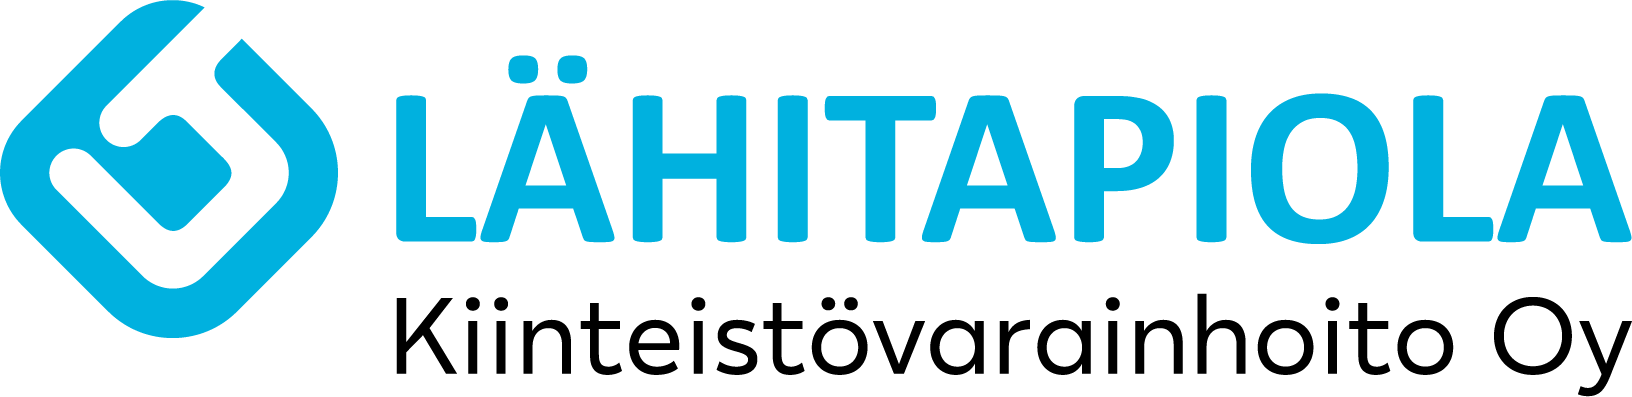 Lähtitapiola Kiinteistövarainhoito Oy:n logo.